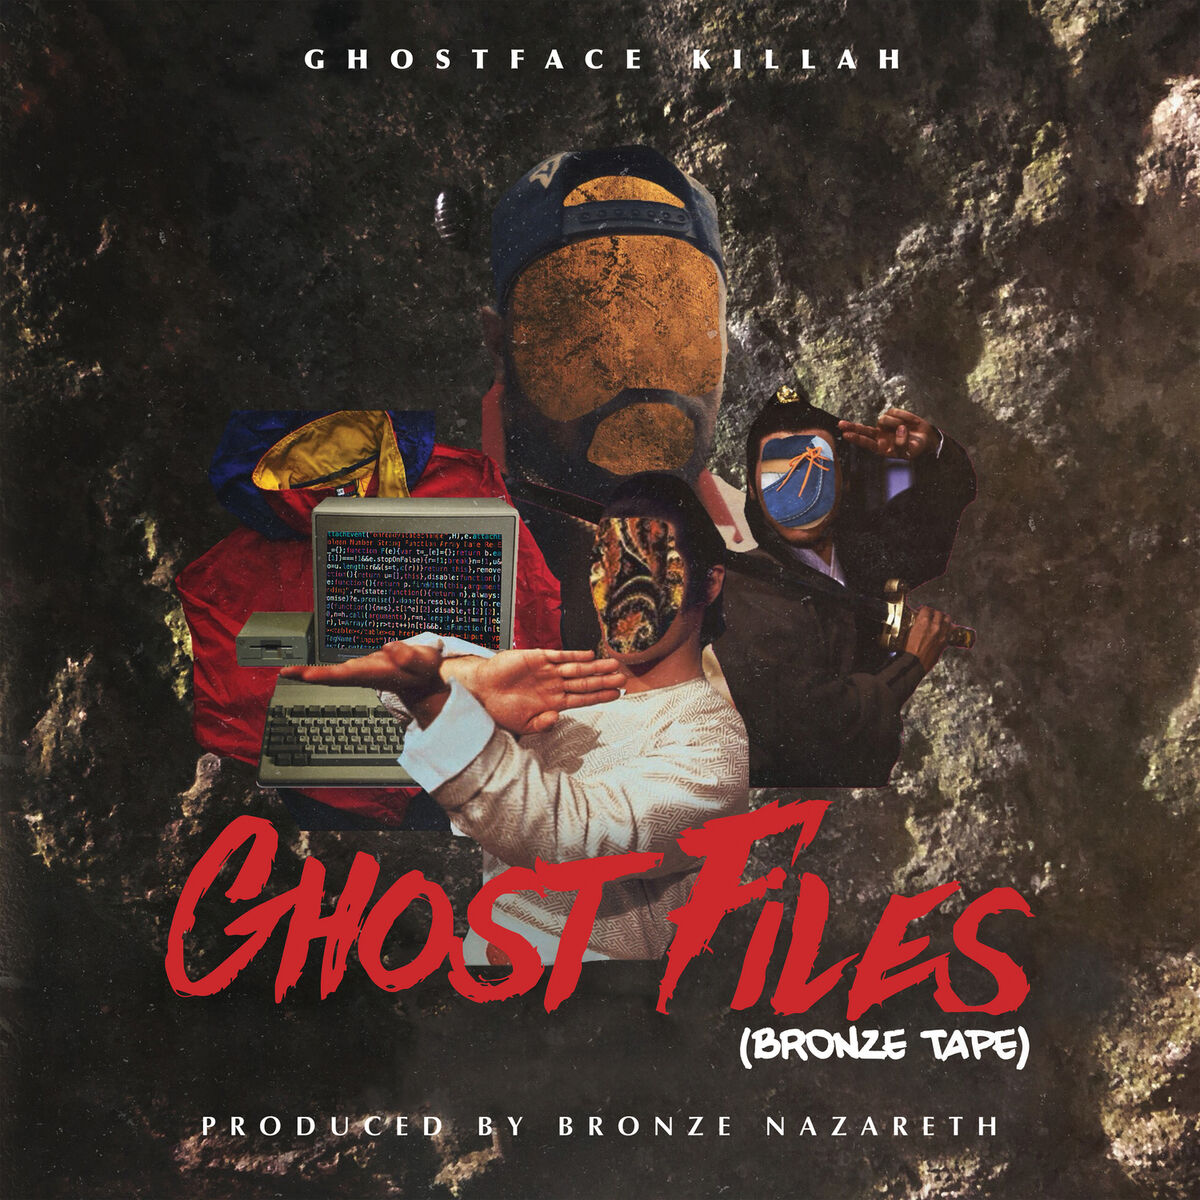 Ghostface Killah - bulletproof wallets featuring raekwon: lyrics 